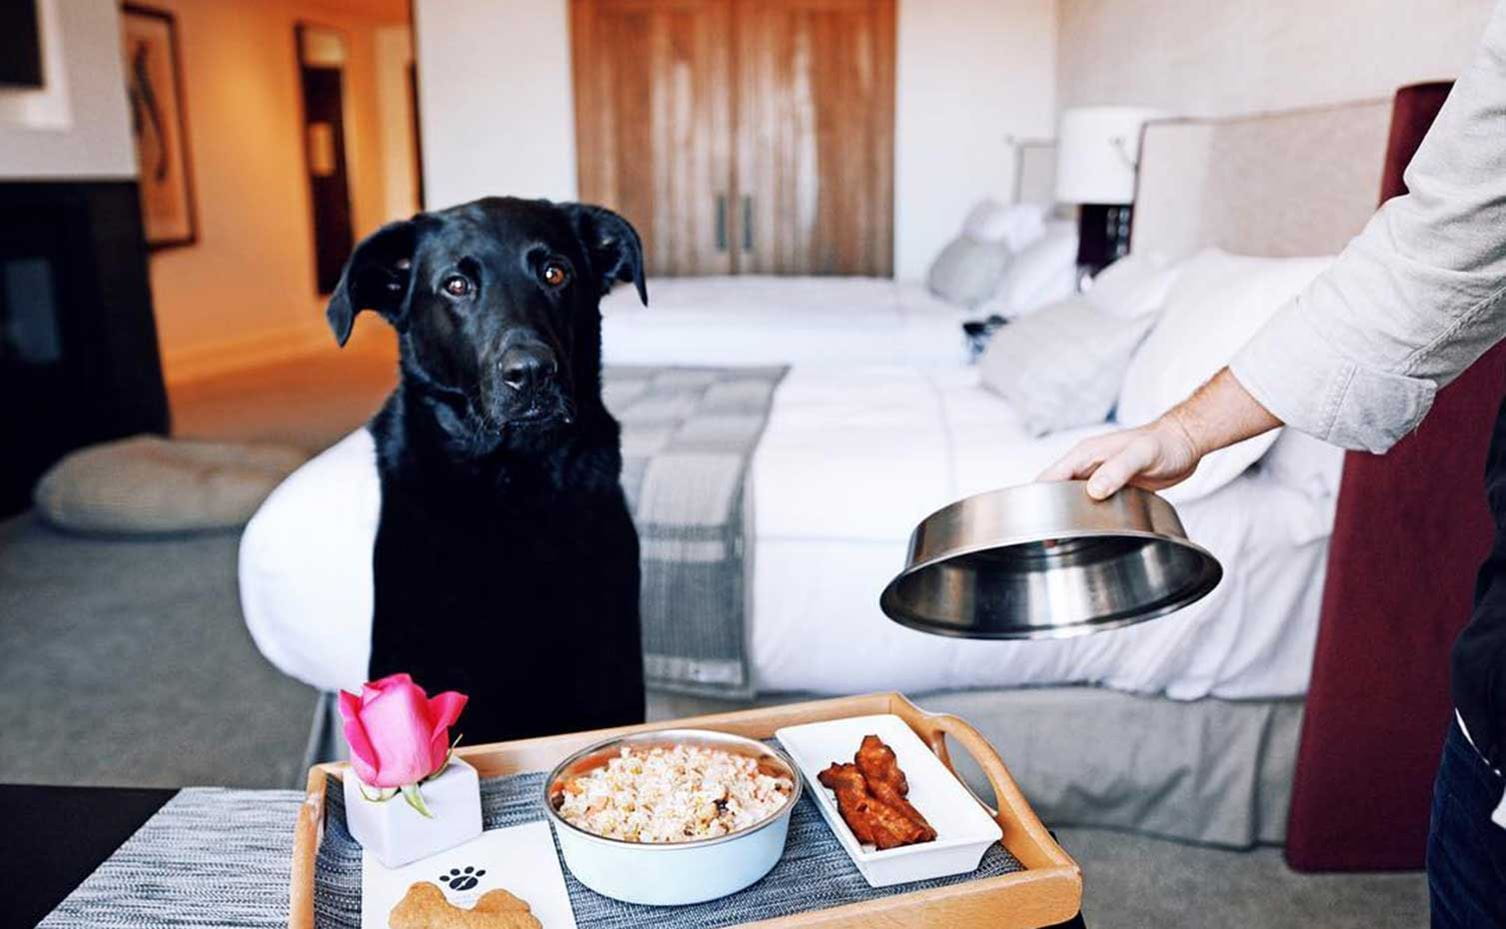 Dog gets room service